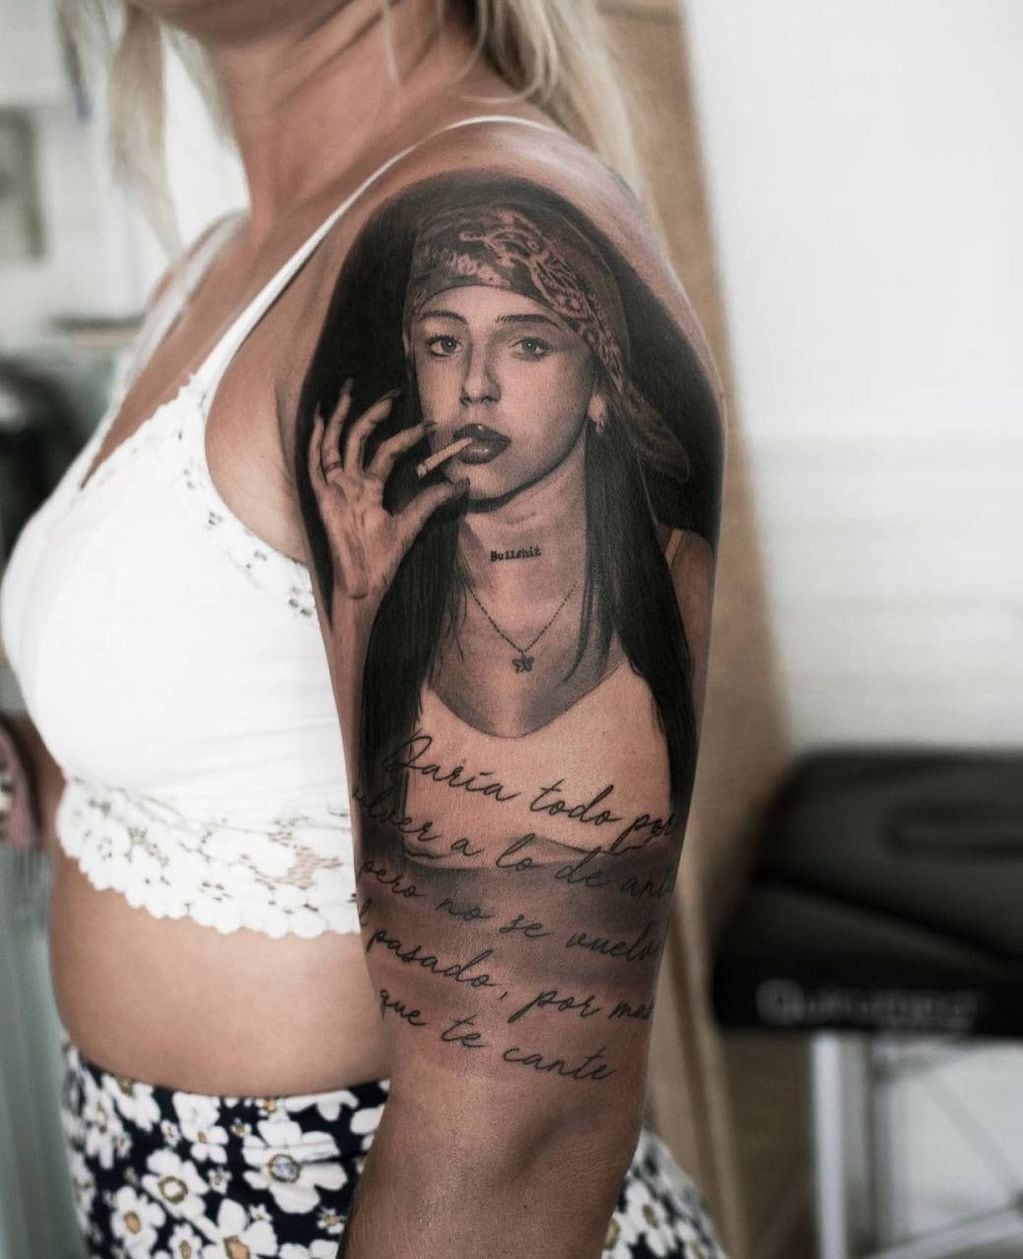 Una admiradora de la rosarina se tatuó en el brazo una de sus fotos más conocidas.